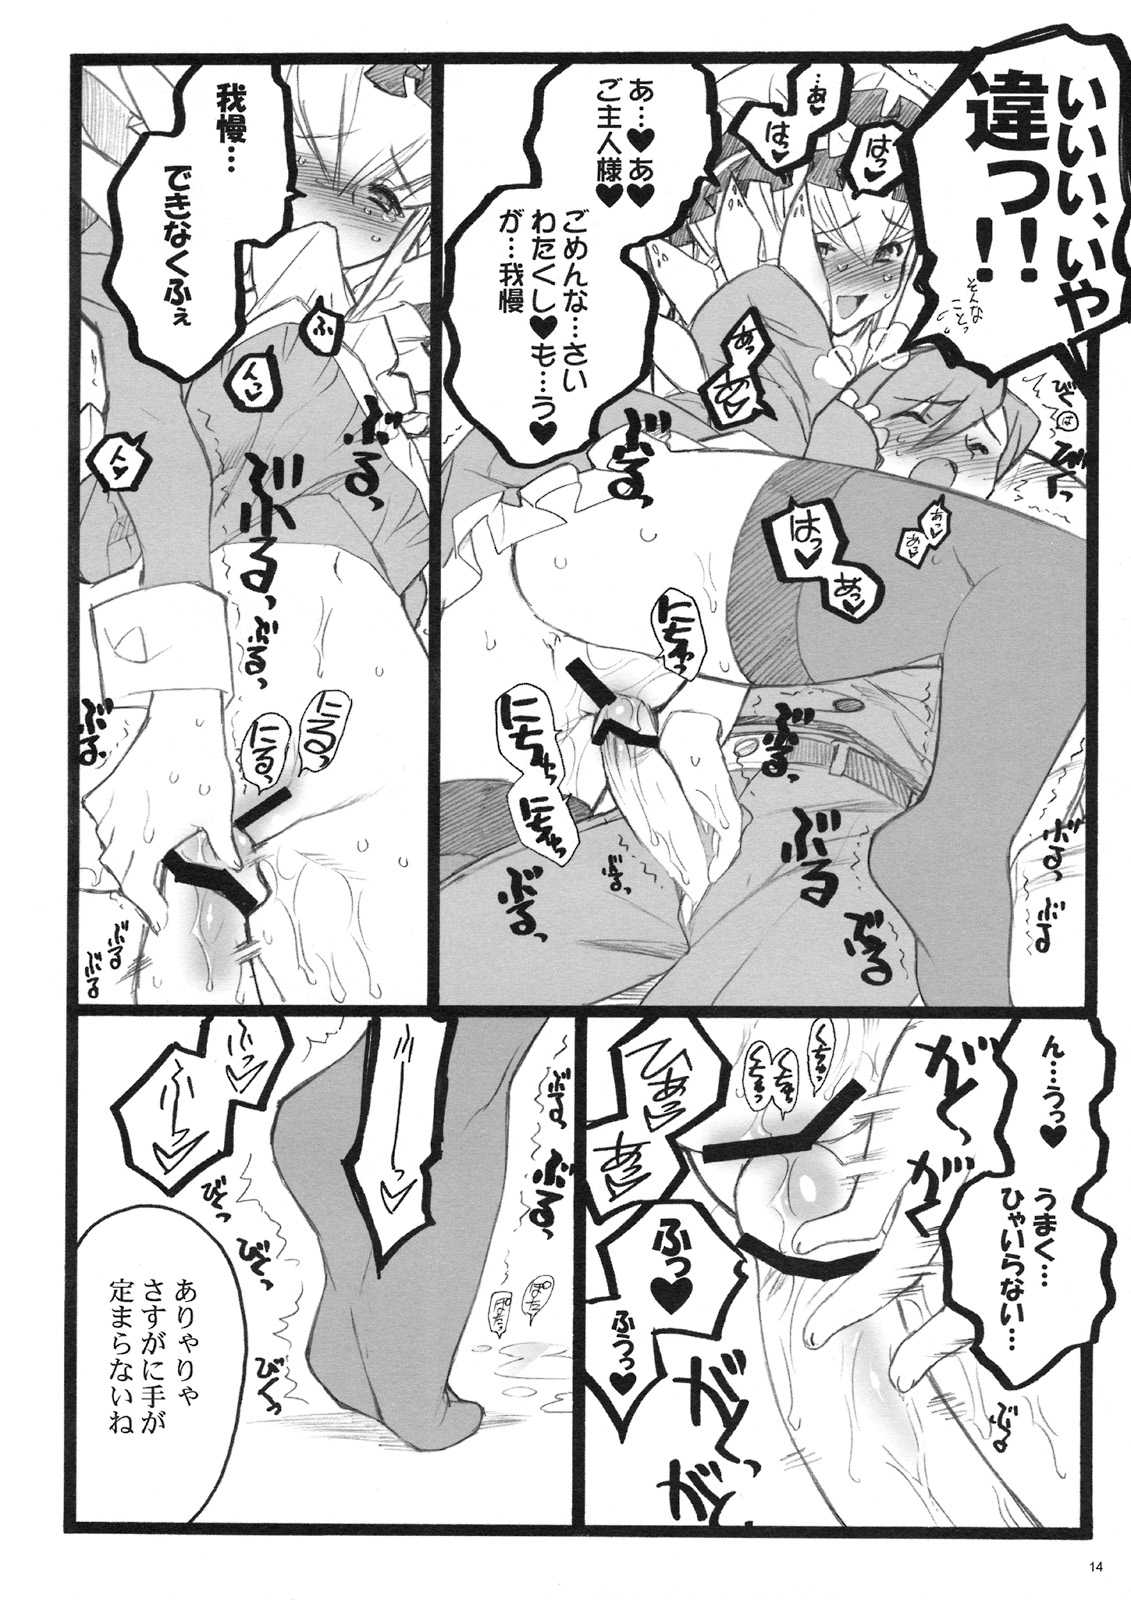 [Keumaya] kuberuta 10-9 fuzoku 18 kin Doujinshi 02 (original) {masterbloodfer} 